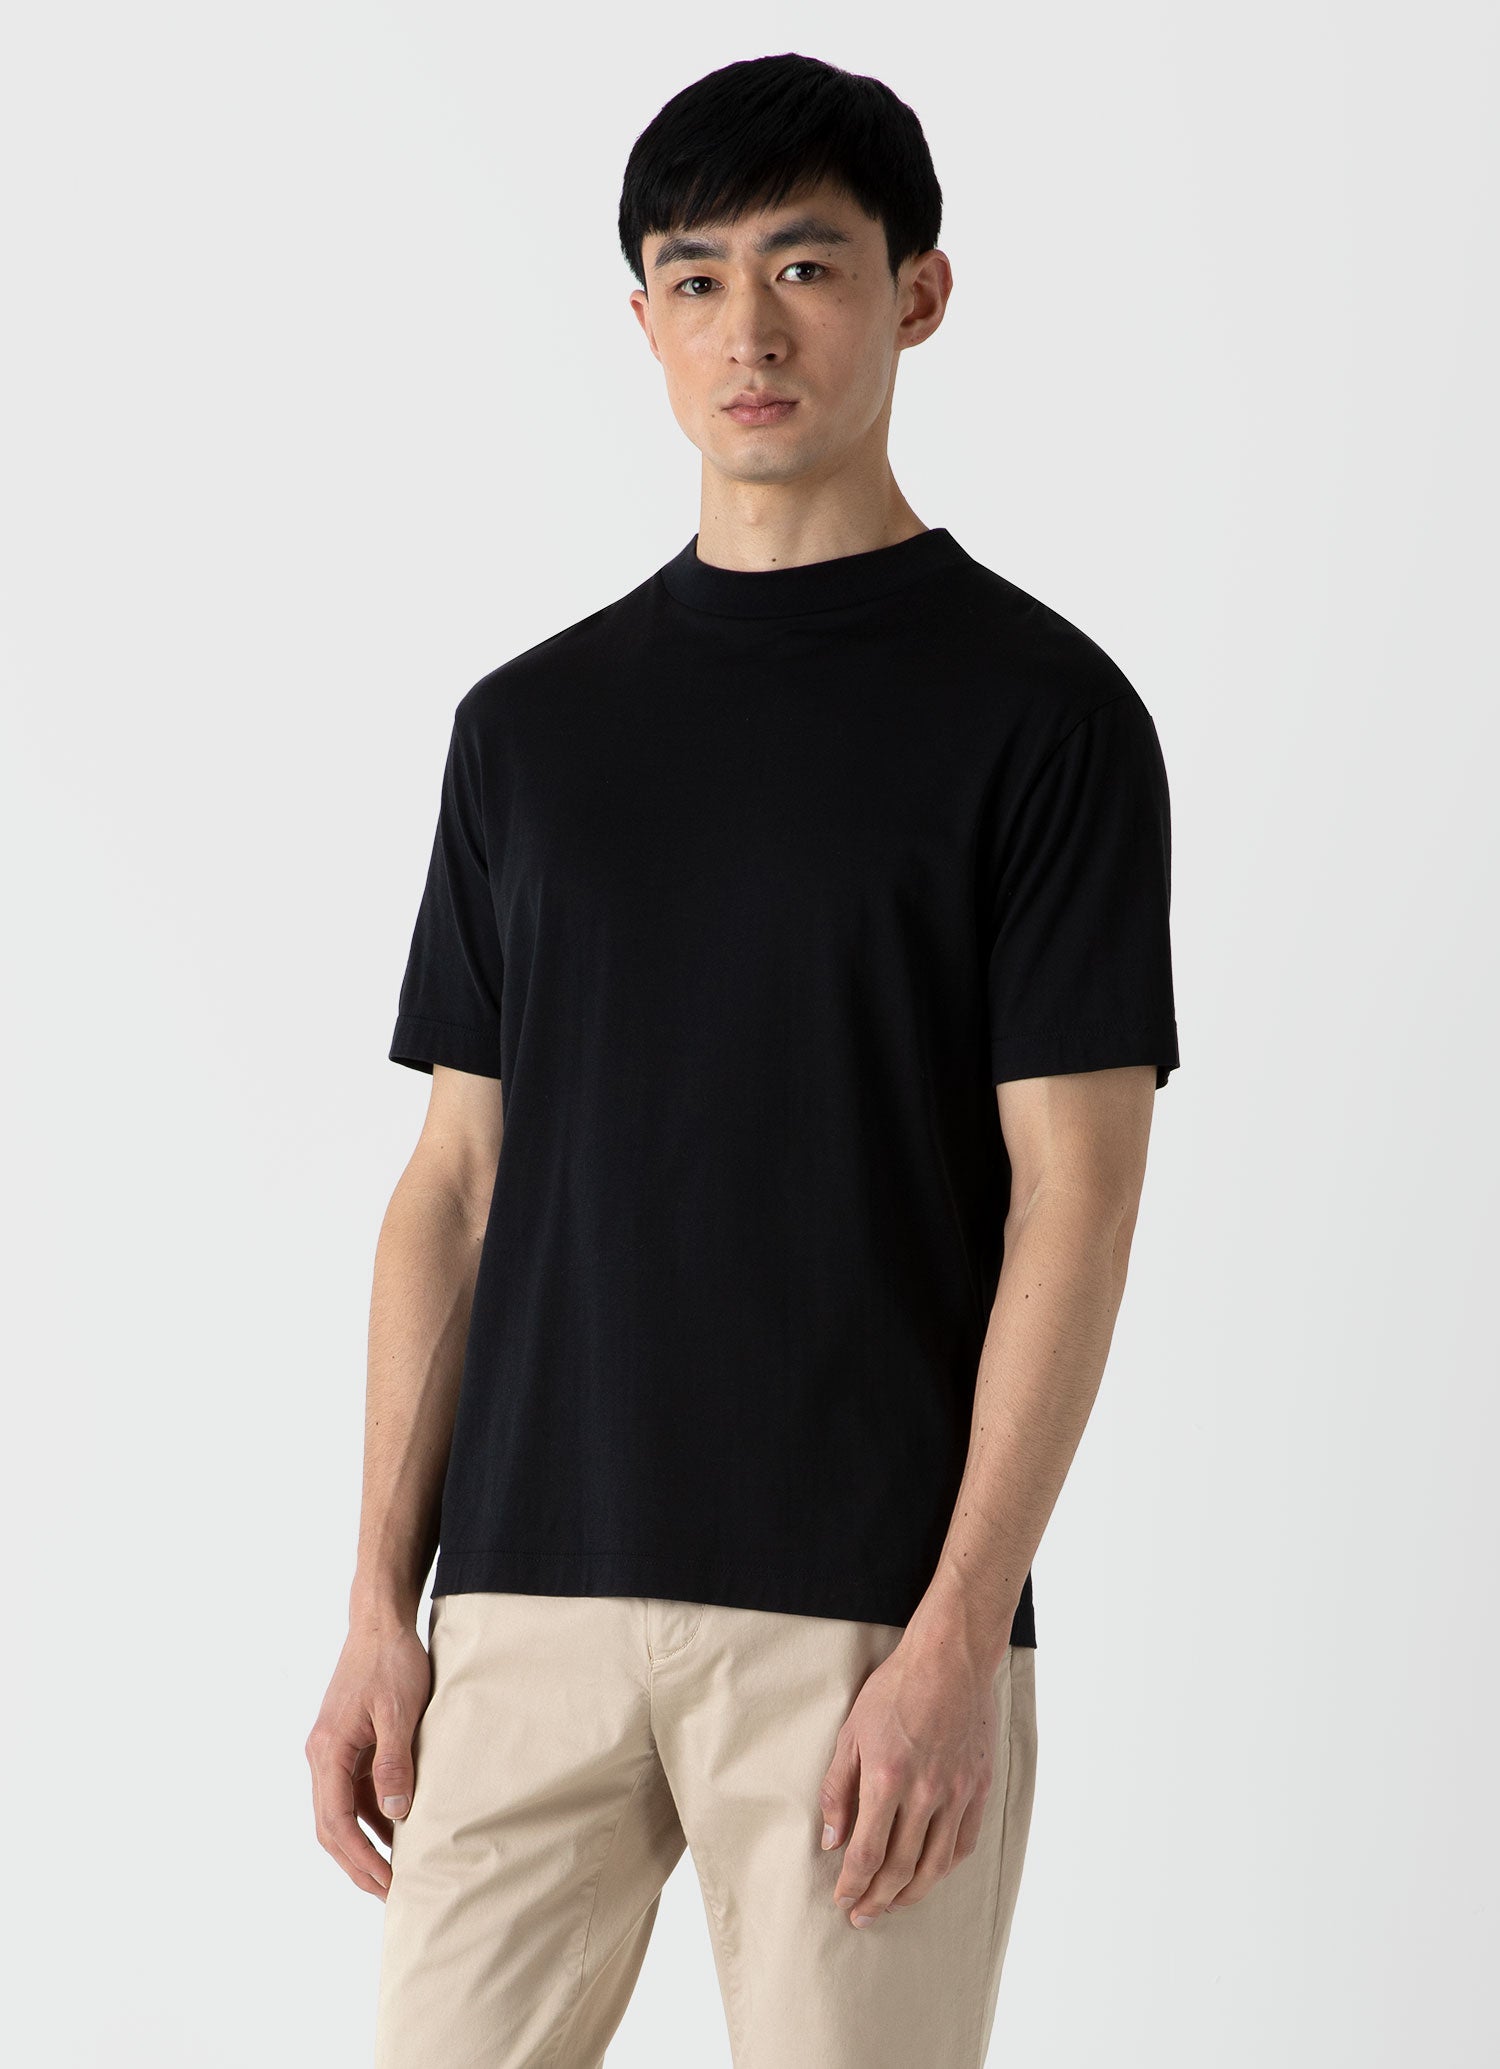 ★新品★Sunspel(サンスペル) メンズ Tシャツ 送料無料肩幅46cm